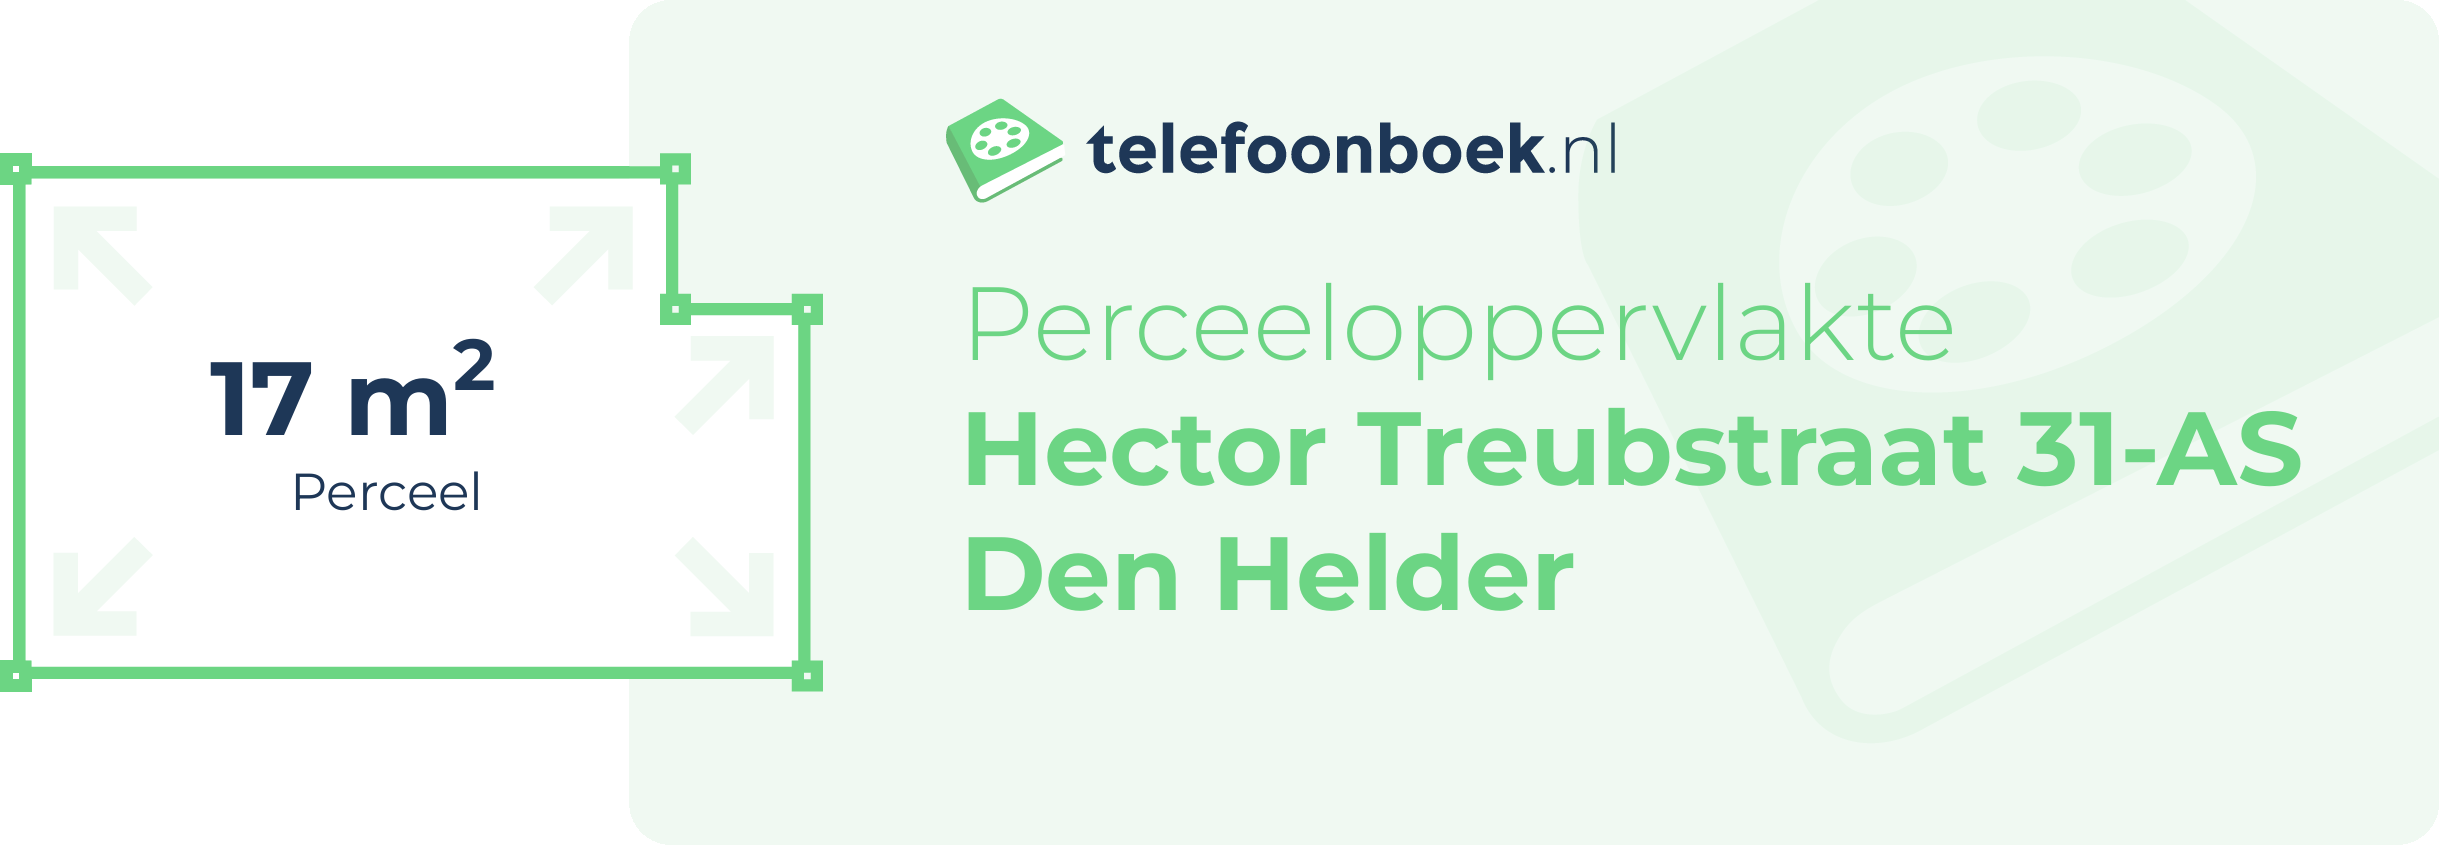 Perceeloppervlakte Hector Treubstraat 31-AS Den Helder